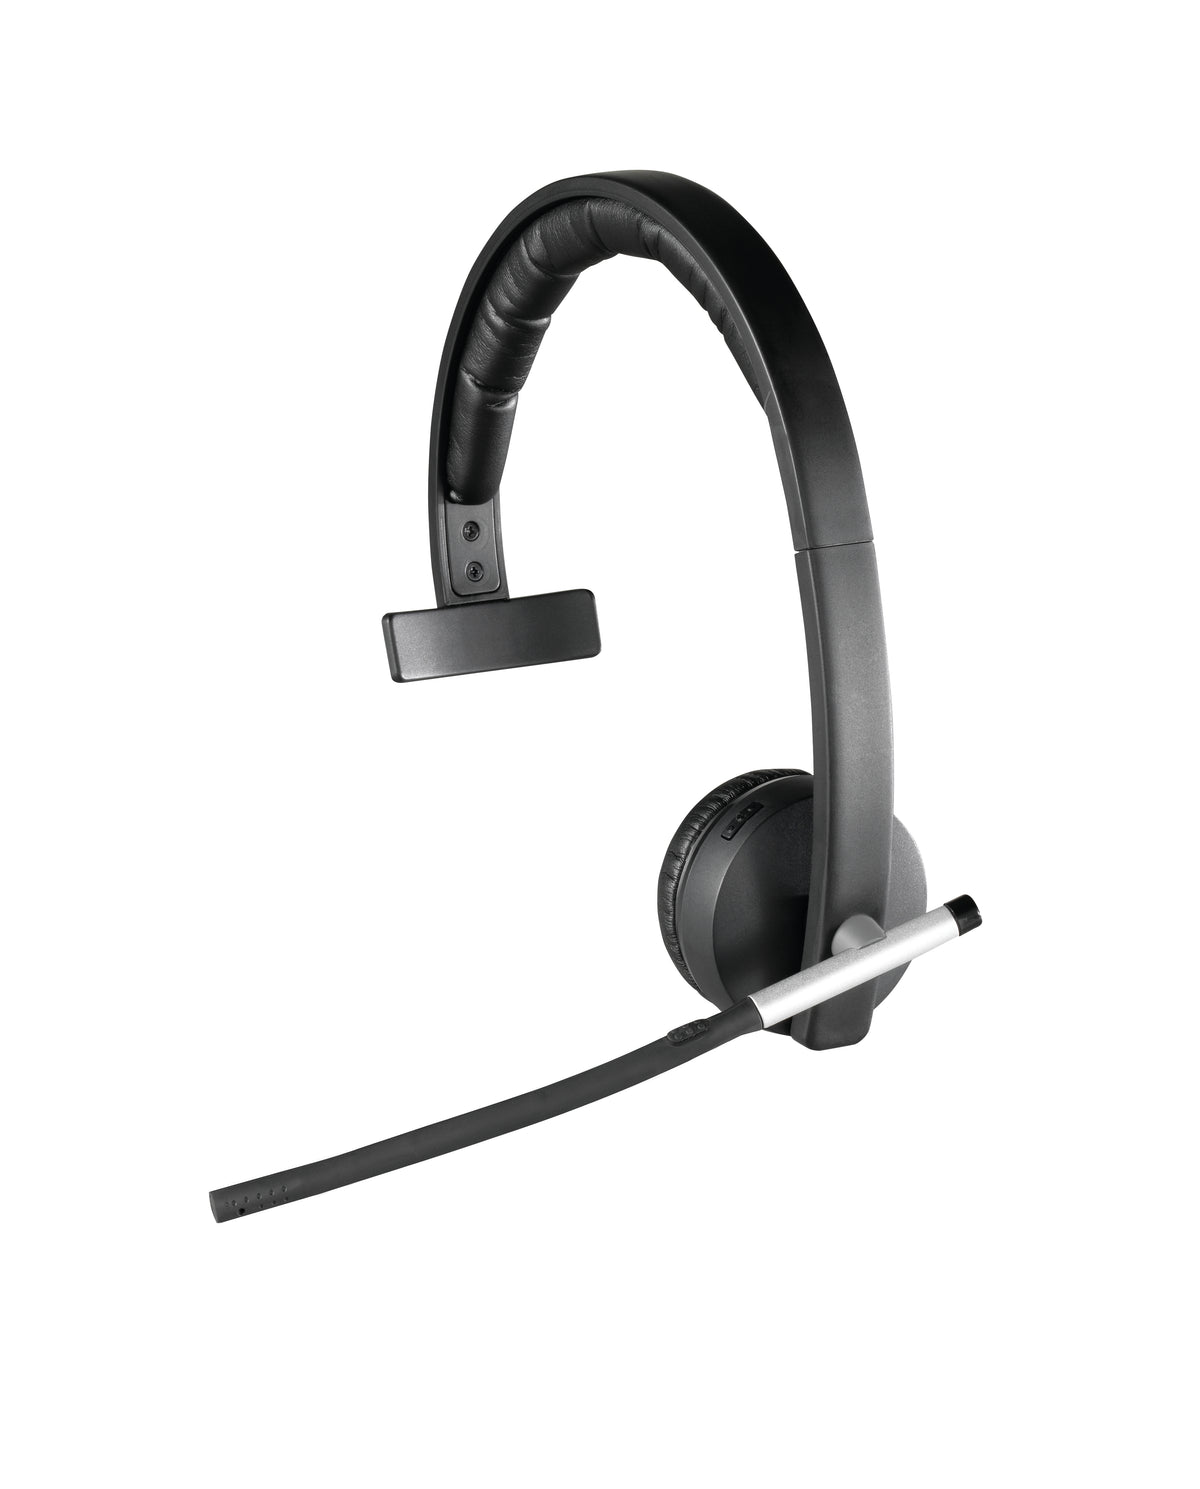 Logitech Wireless Headset Mono H820e - Auscultadores - no ouvido - DECT - sem fios